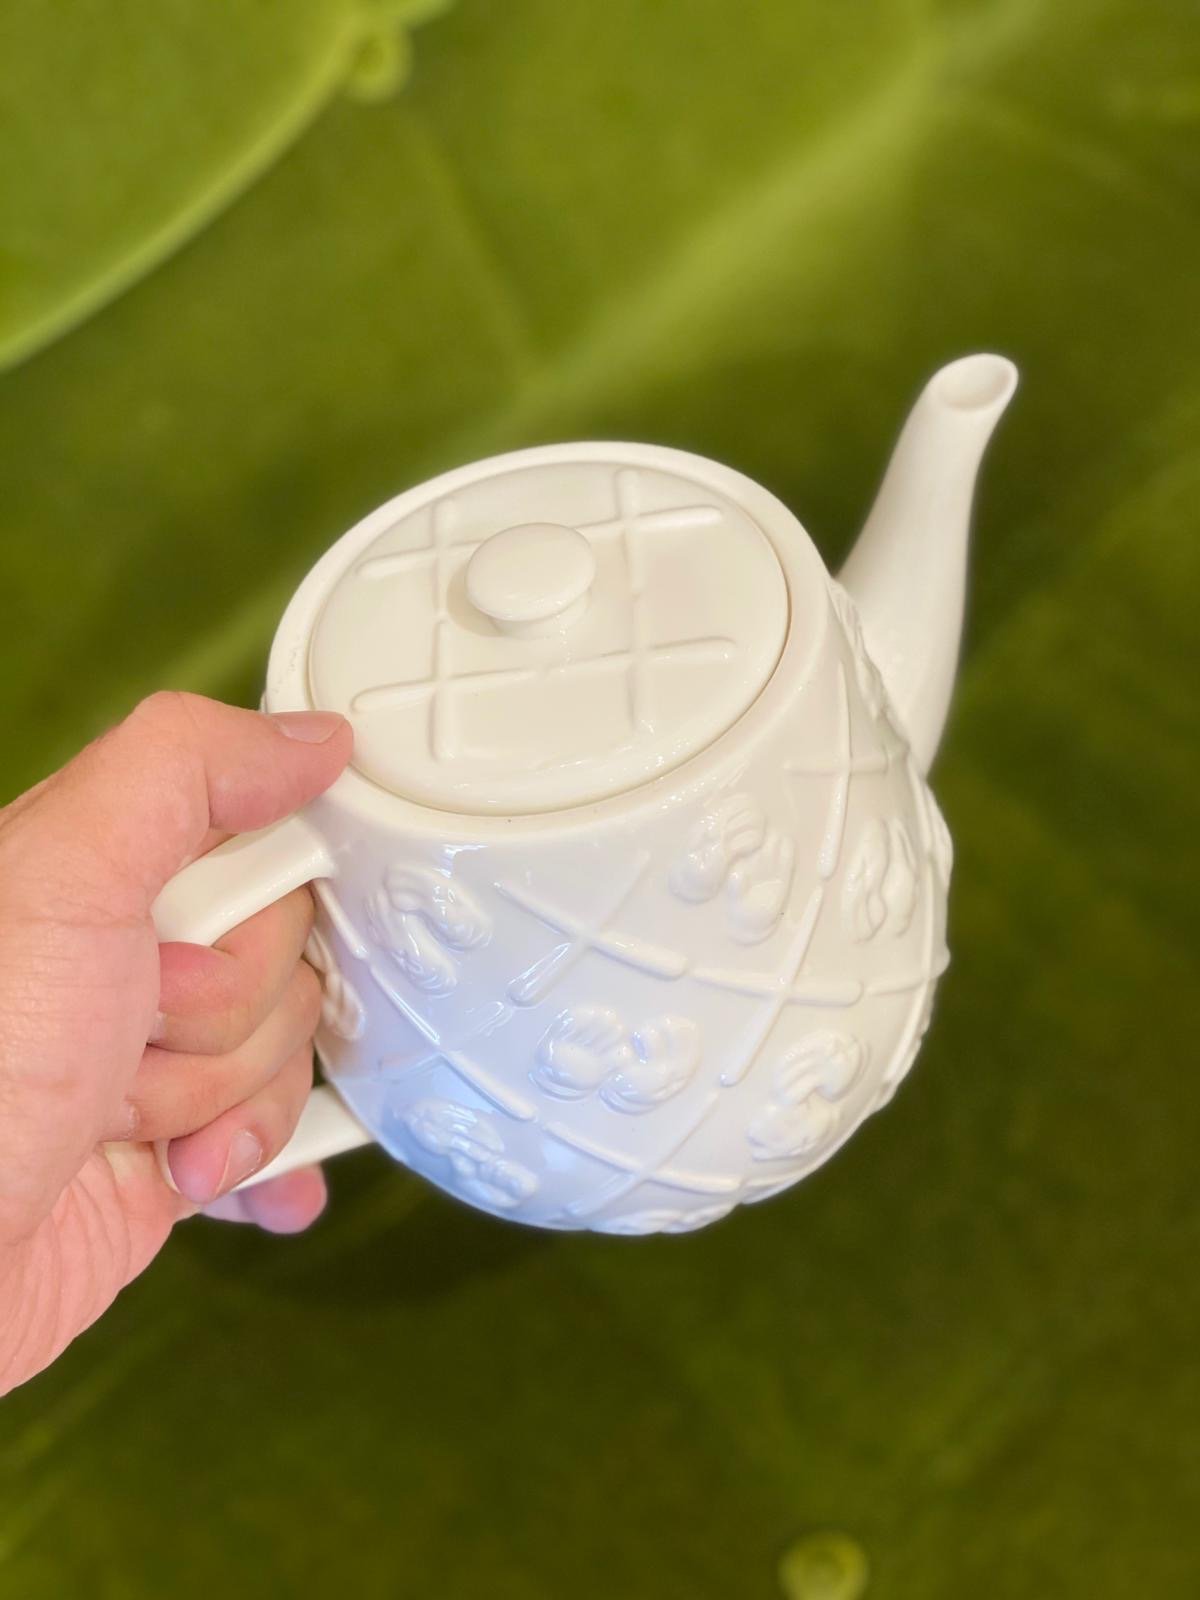 KAWS Ceramic Teapot white